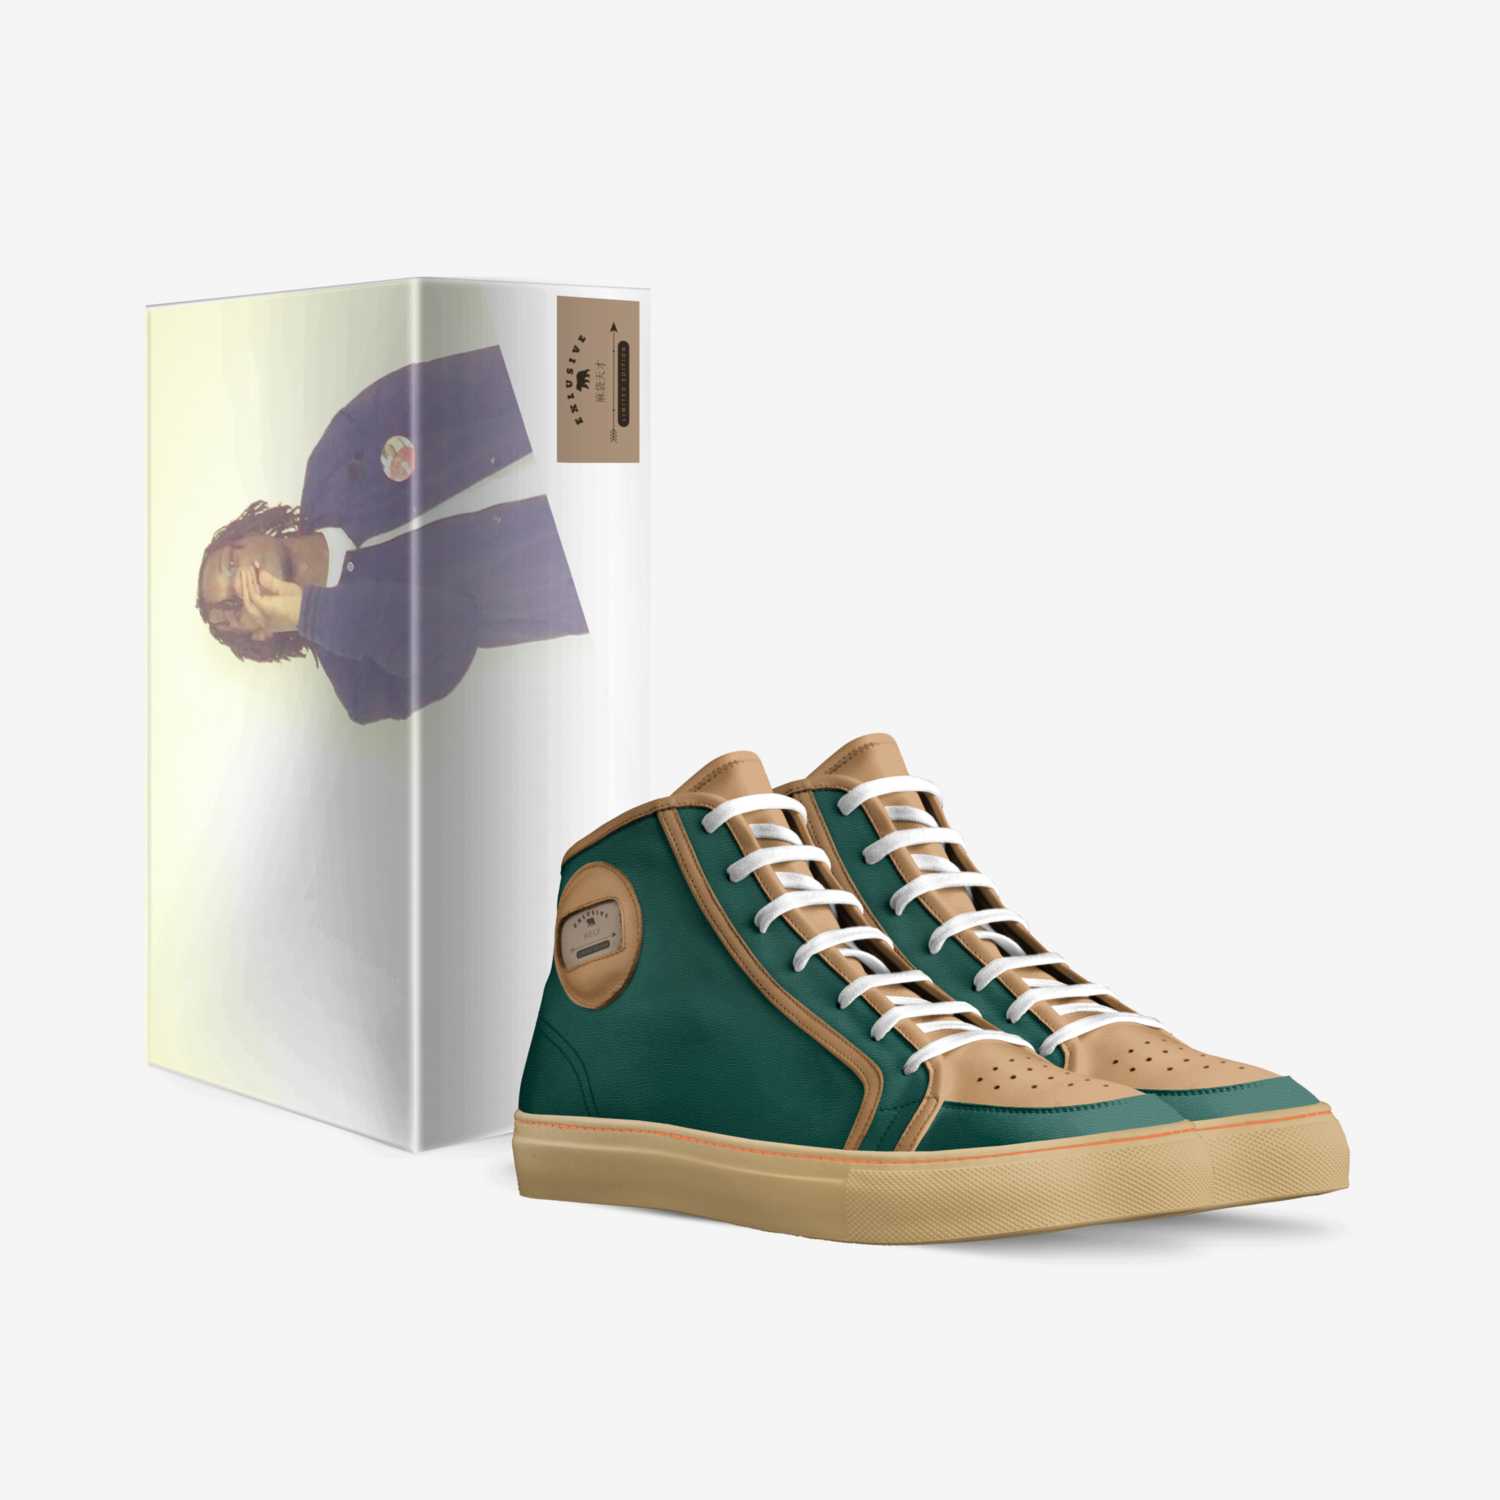 麻袋天才 custom made in Italy shoes by Foa Juanhunnit | Box view